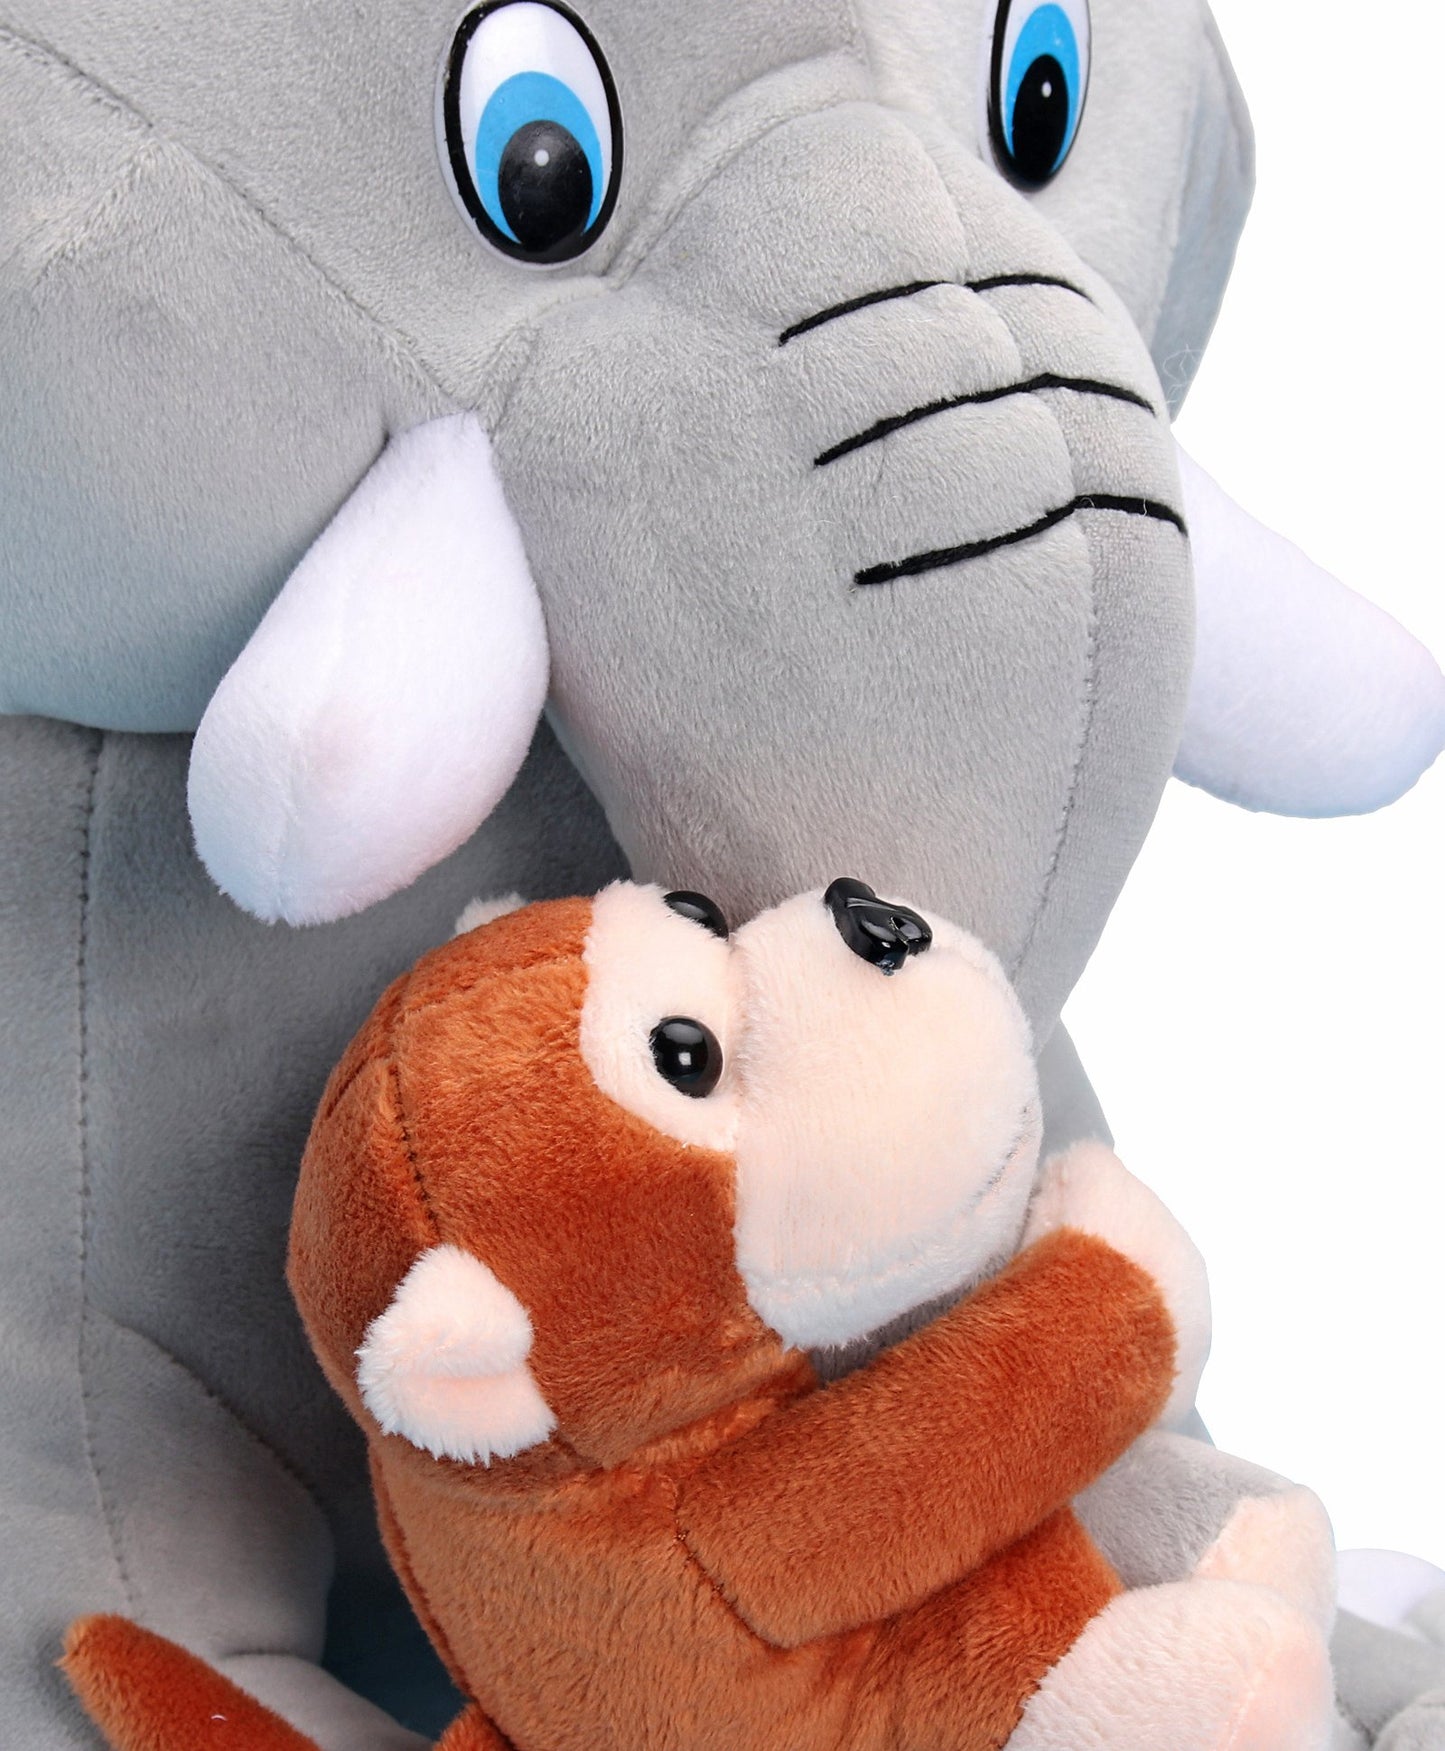 Monkey hugging elephant soft toy